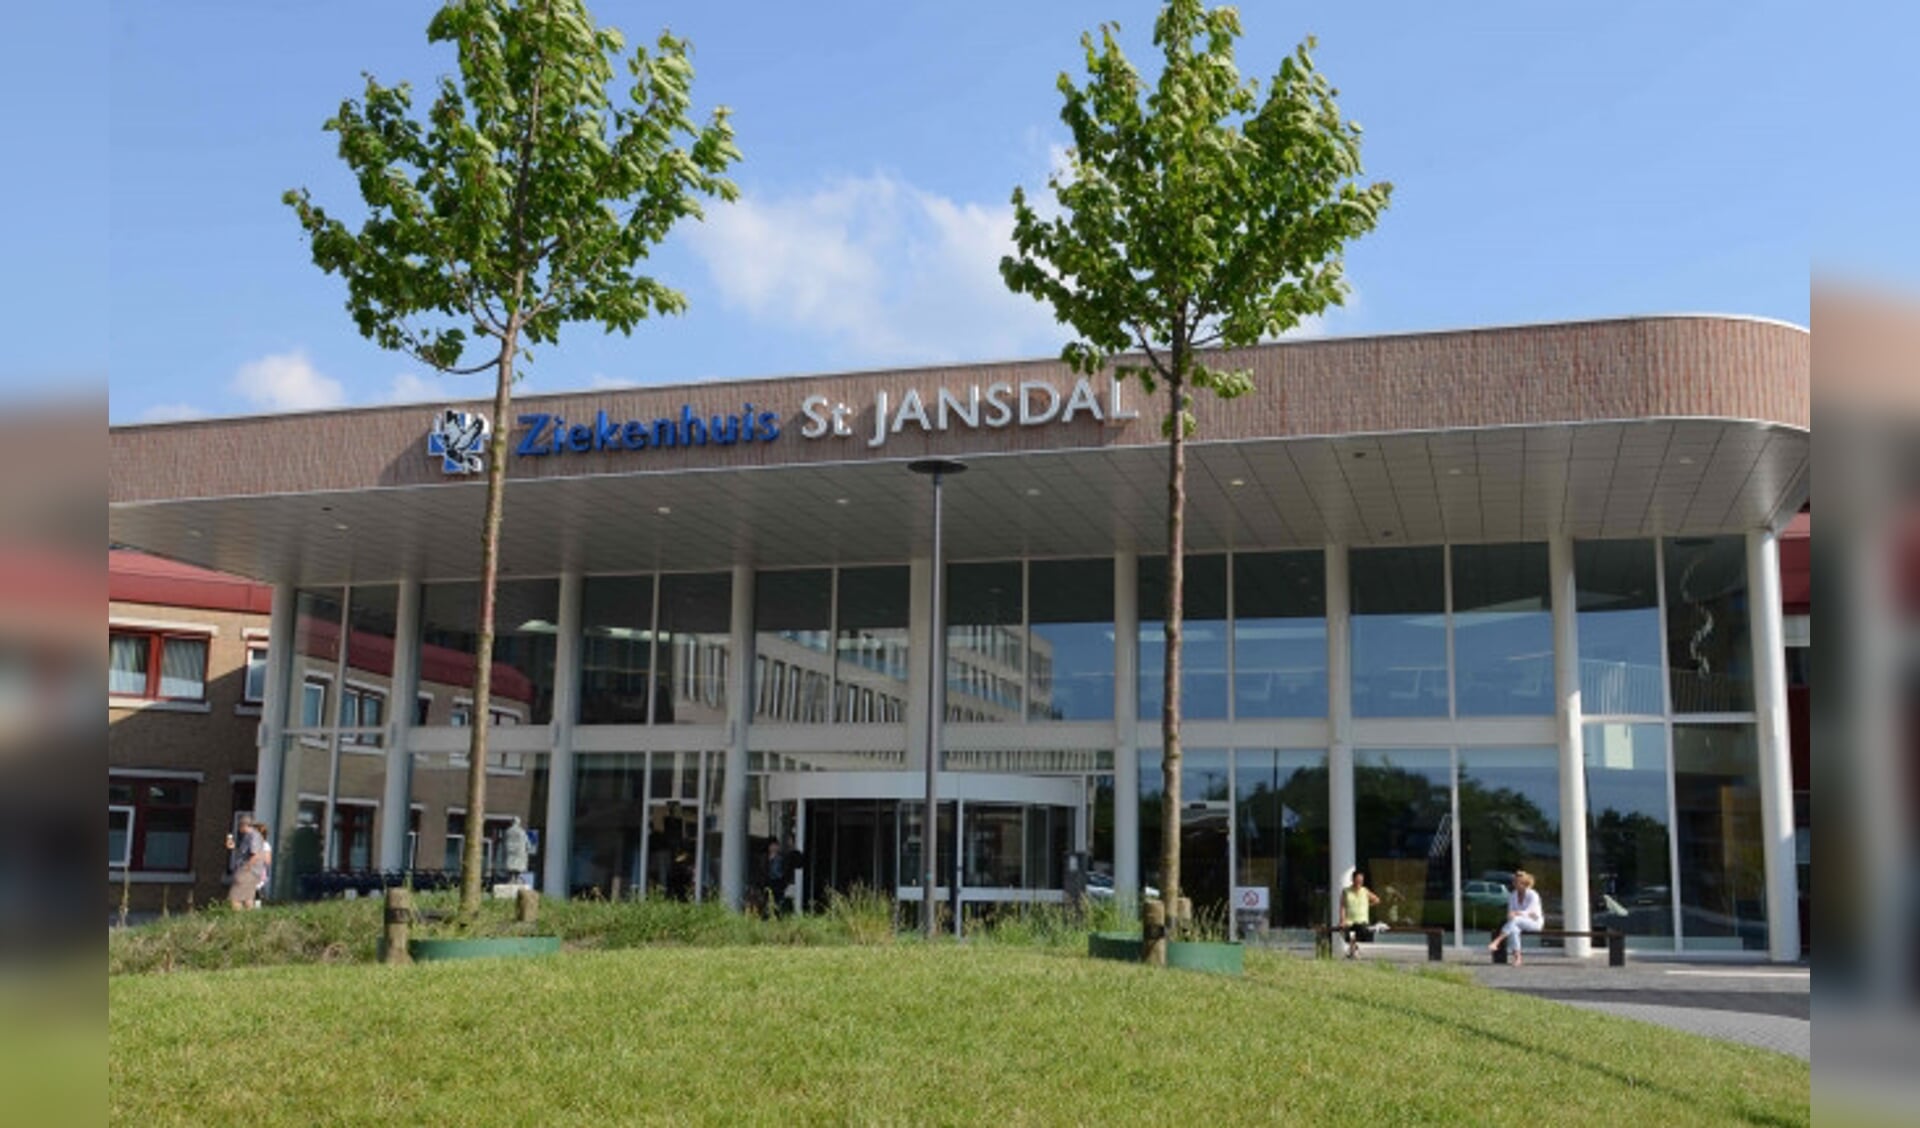  Ziekenhuis St Jansdal in Harderwijk.